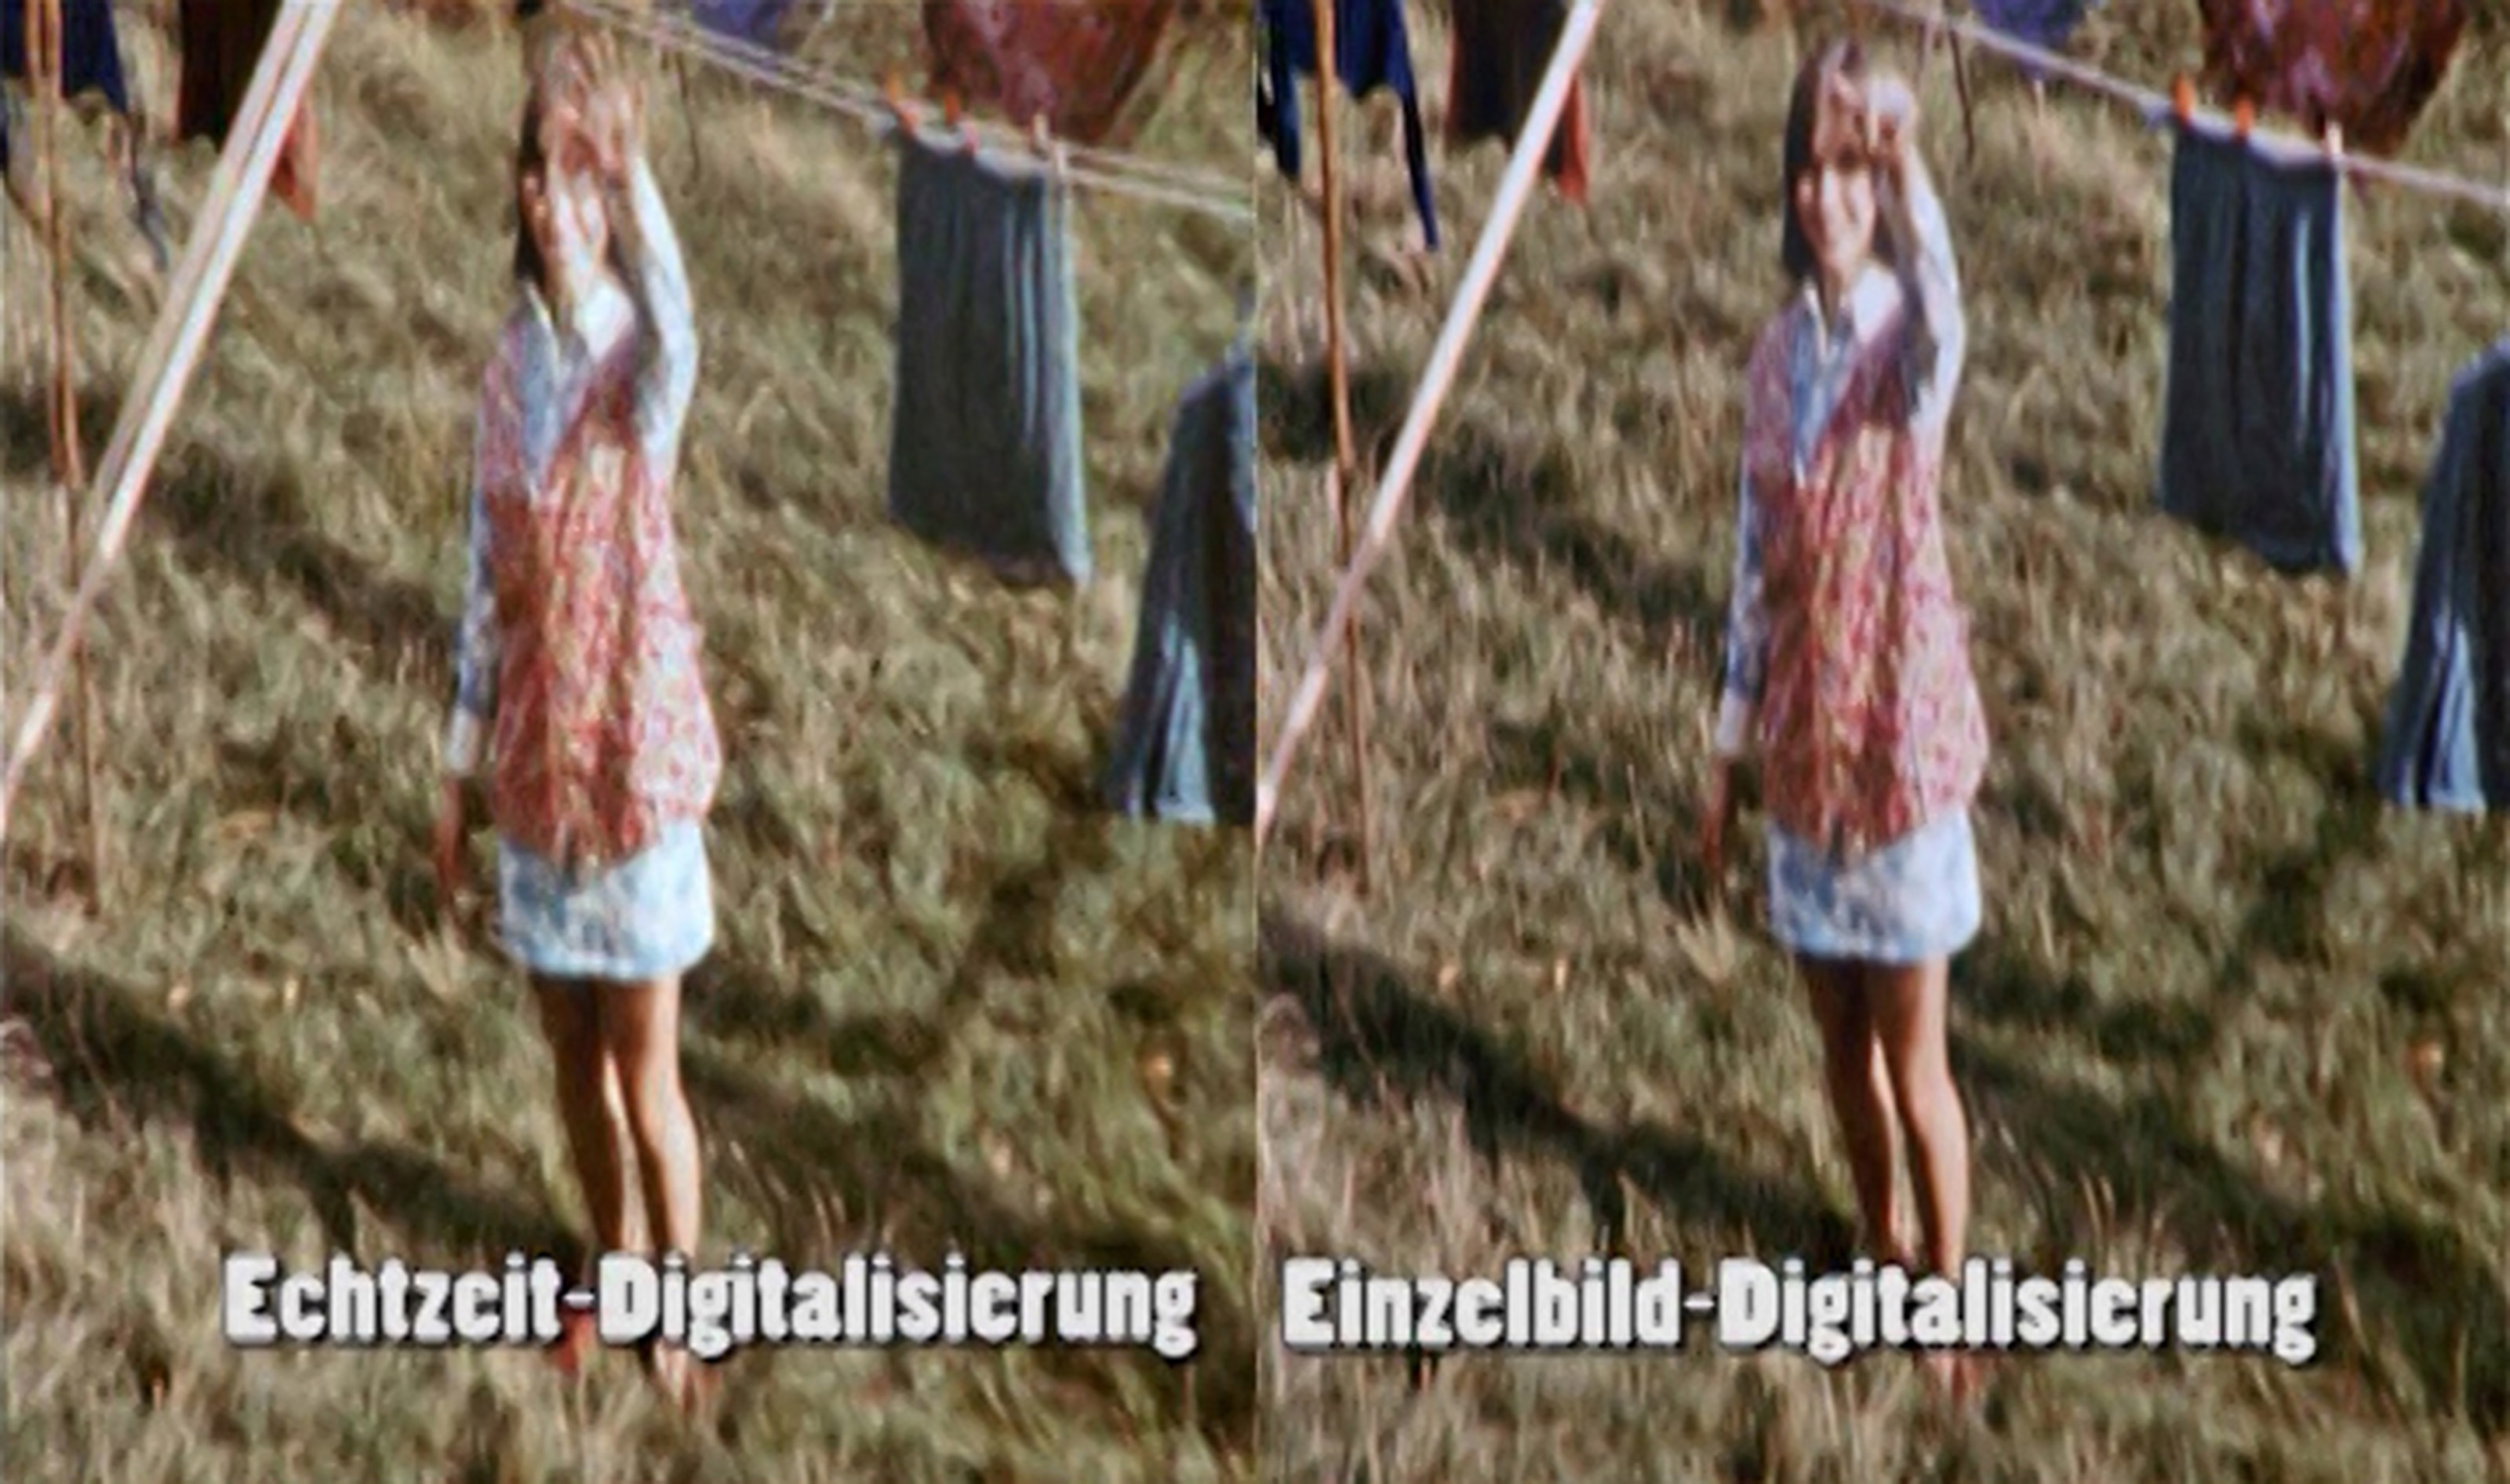 Super 8 digitalisieren auf DVD|Vergleich-Einzelbildabtastung-Abfilmen-bei-Schmalfilm-ueberspielen-de